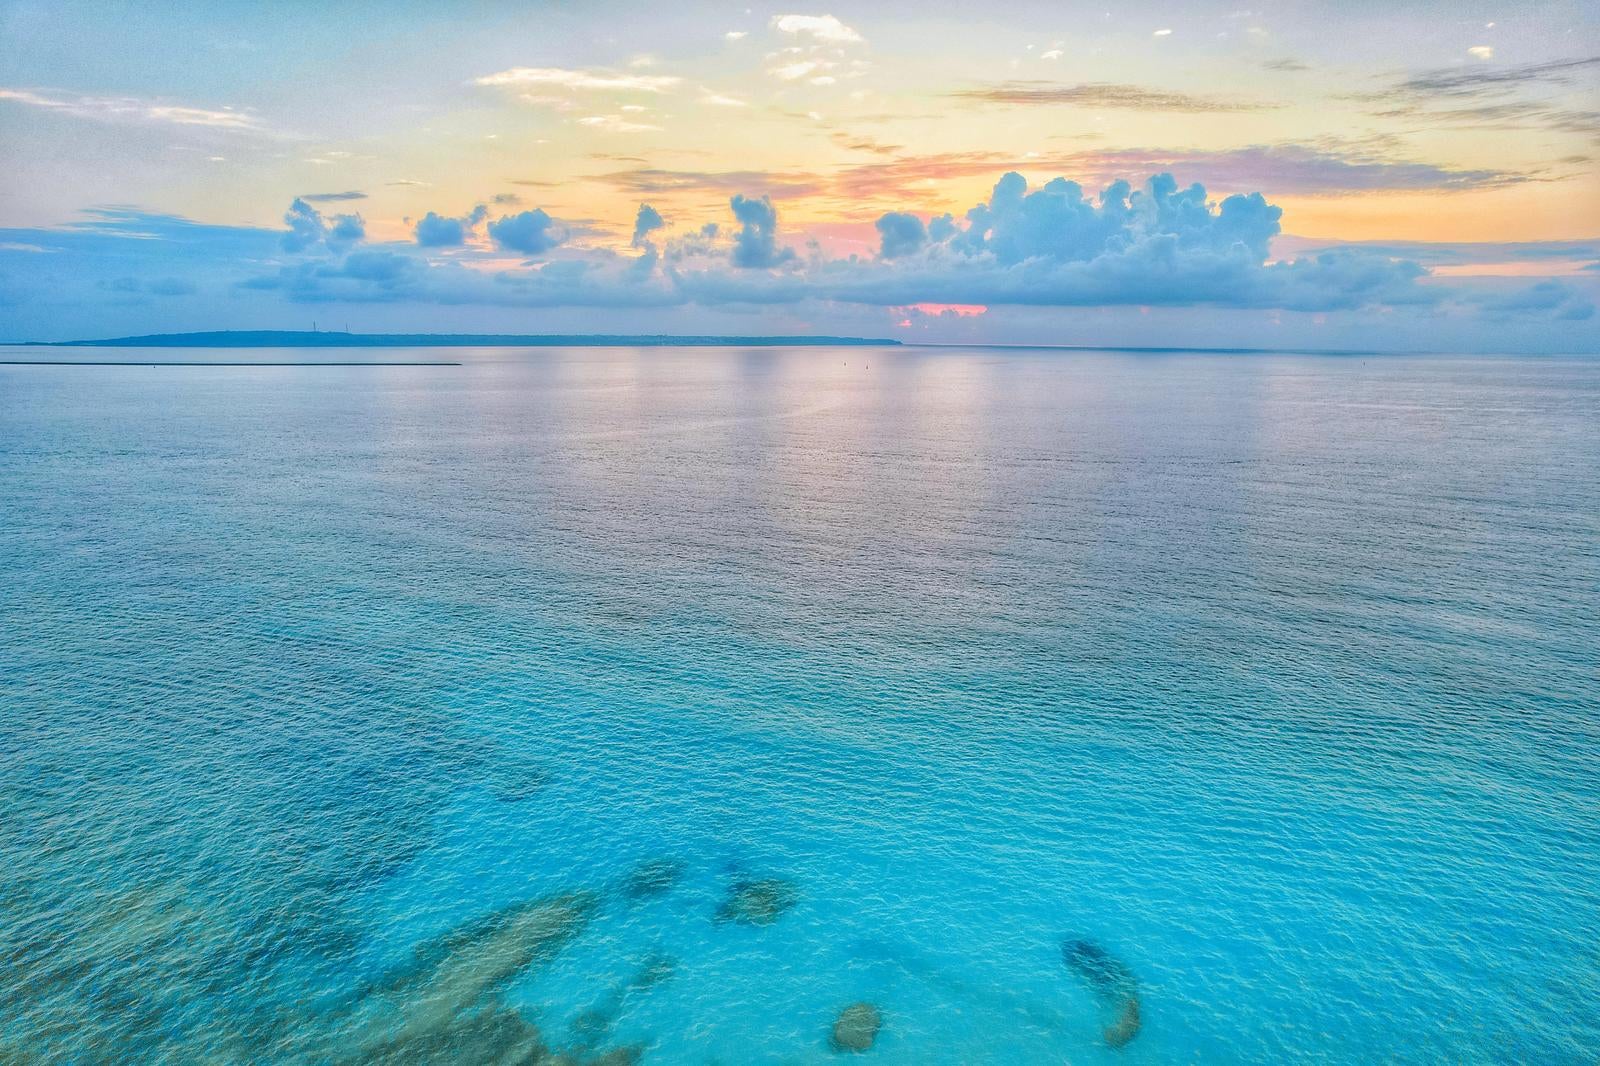 「日暮れのオレンジの空と静かな宮古島の海」の写真